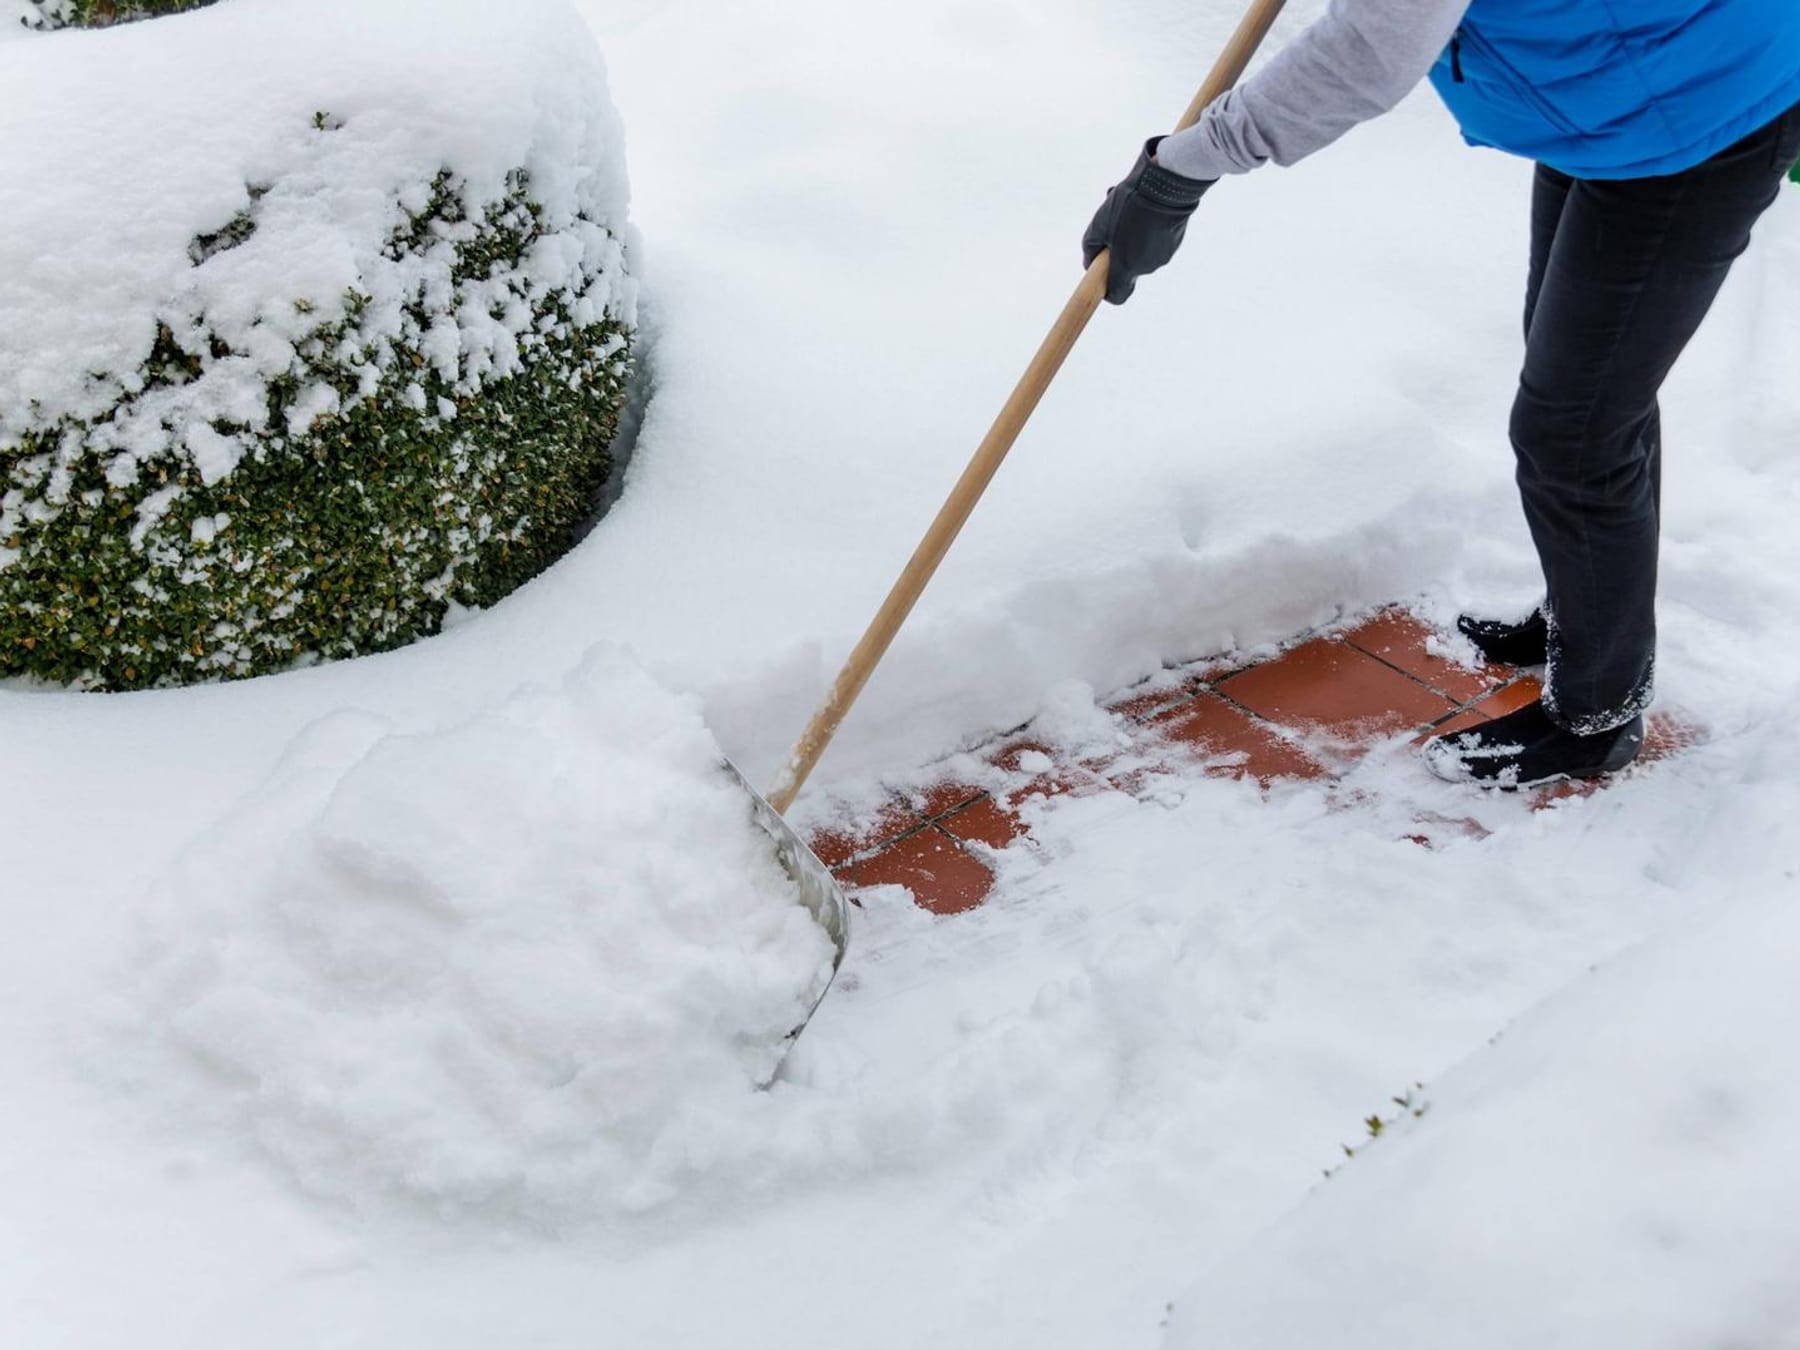 Winterdienst in Schonach: Gericht stärkt beim Schneeschaufeln